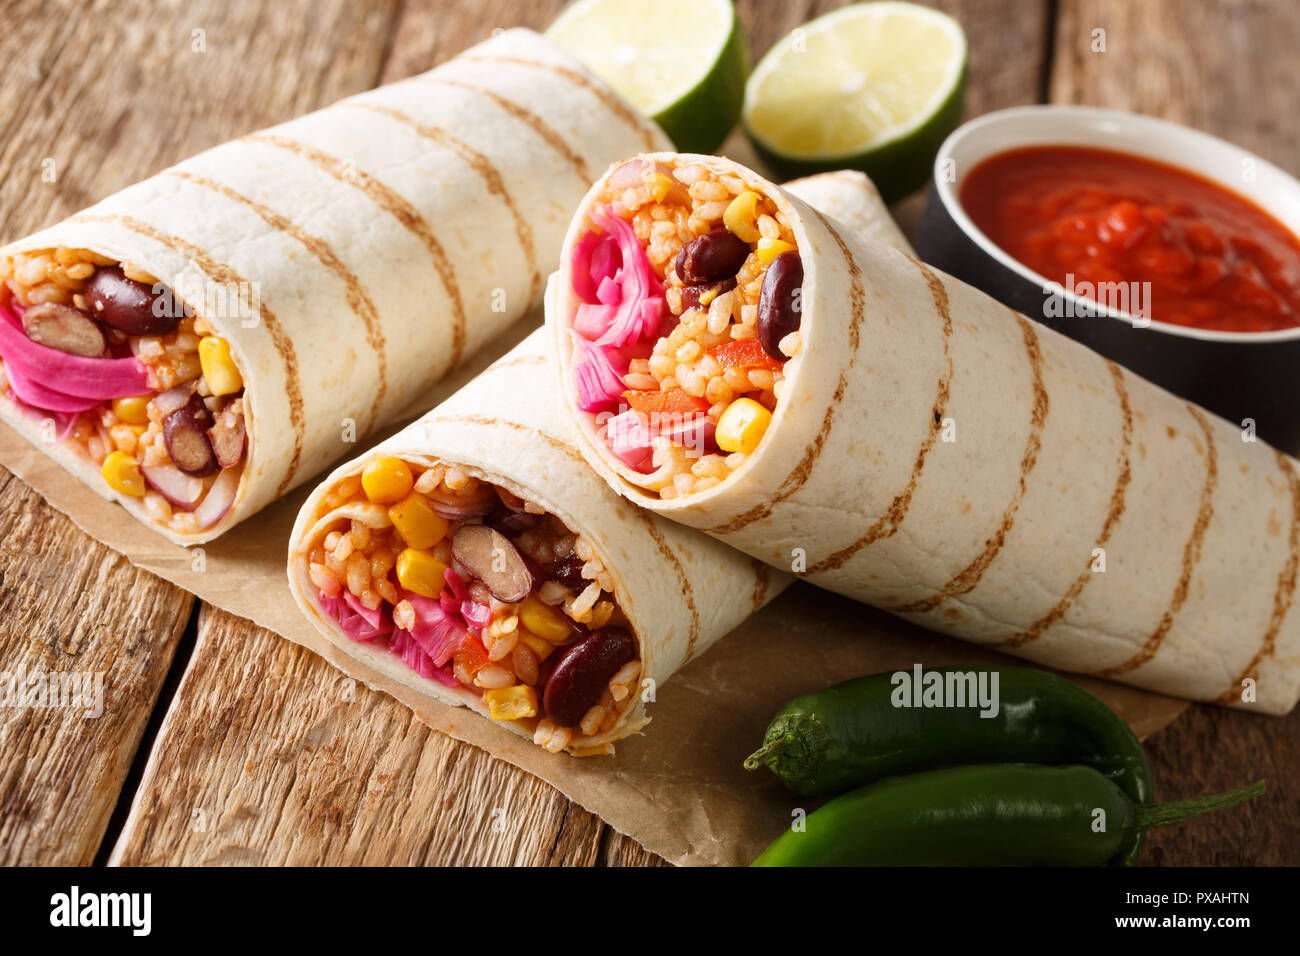 Köstliche gewürzte vegetarische Burrito mit Reis und Gemüse close-up auf  dem Tisch. Horizontale Stockfotografie - Alamy